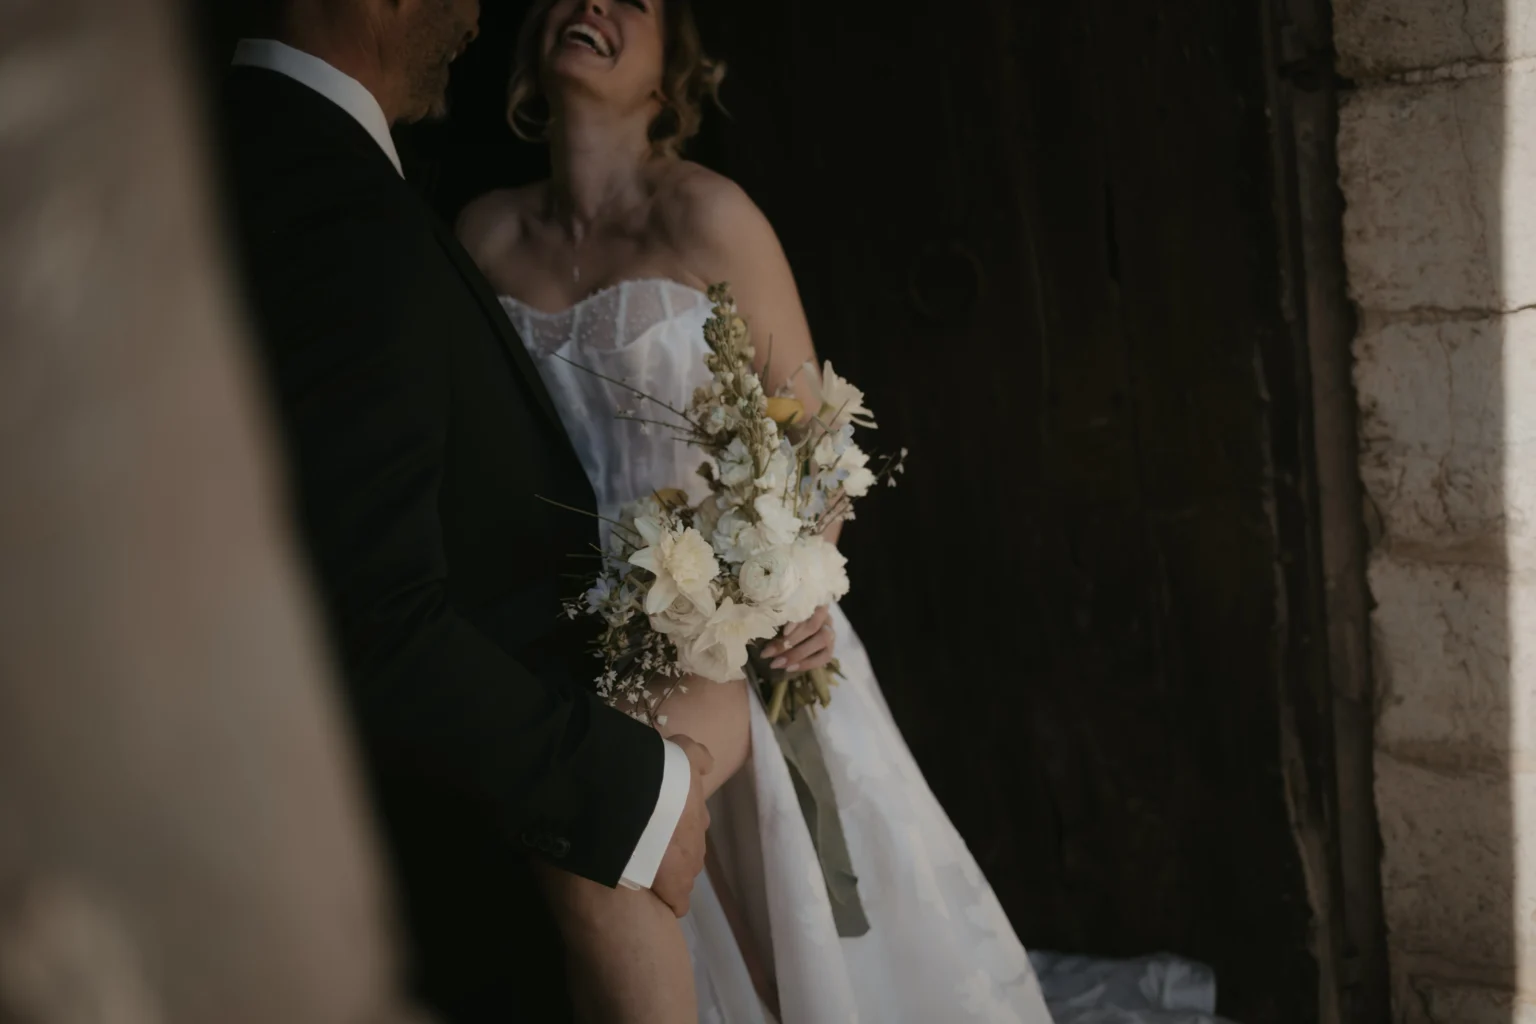 Brautpaar beim Fotoshooting. Der Bräutigam lehnt sich lässig an eine Hauswand und die Braut präsentiert ihren Brautstrauß.